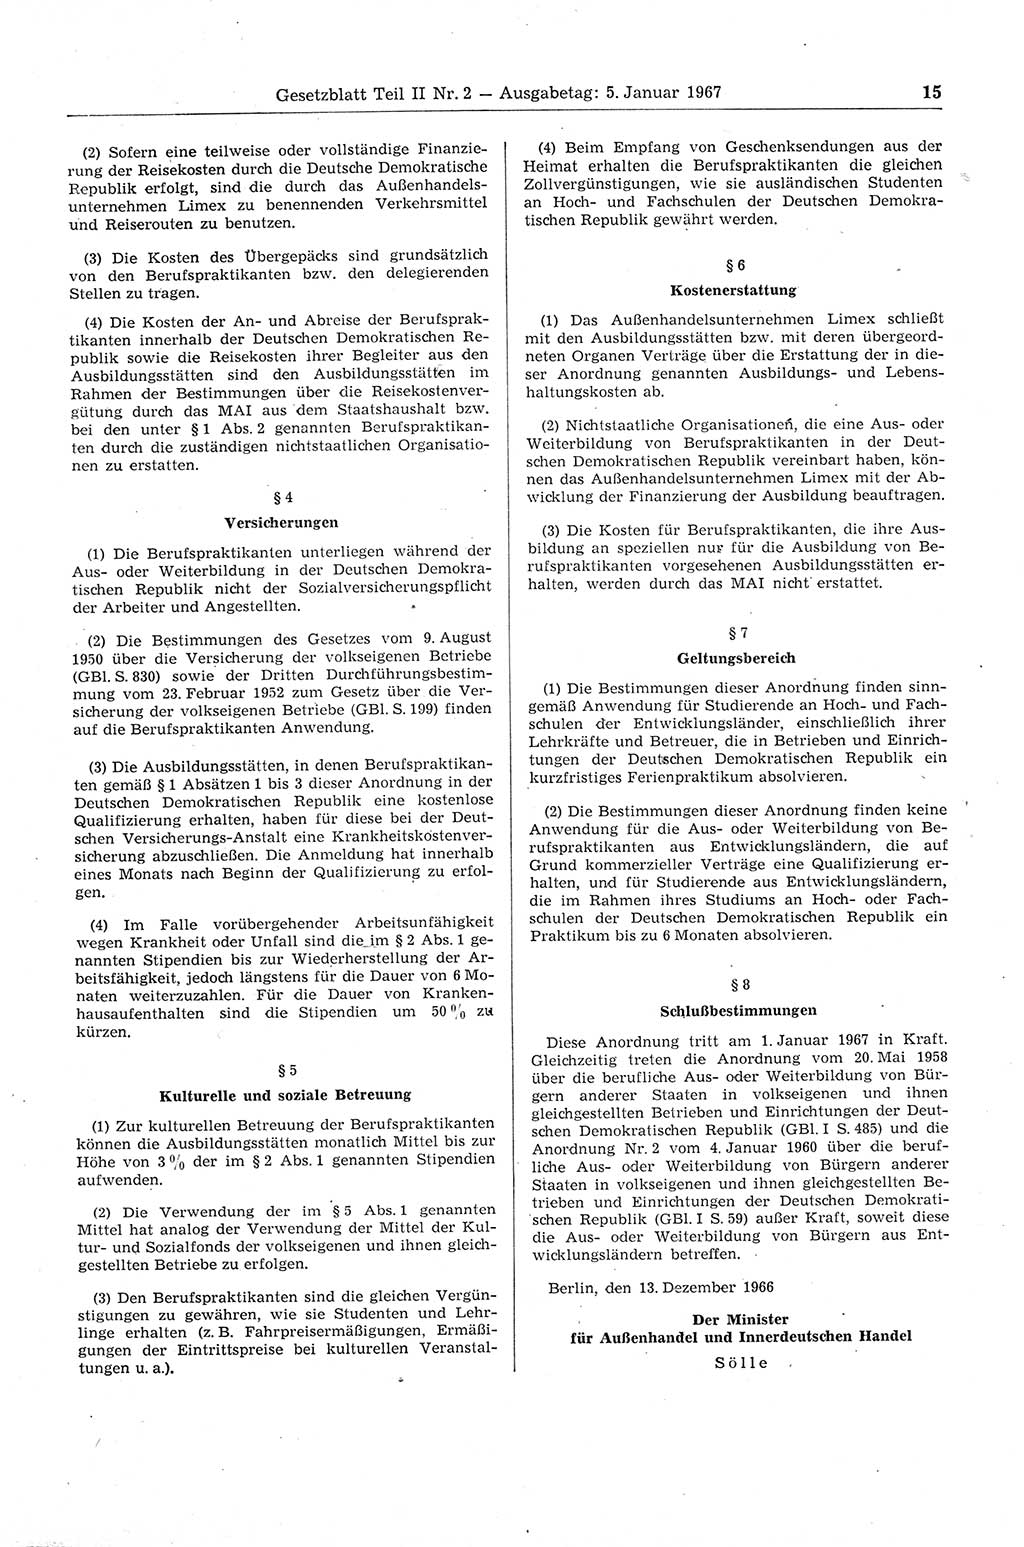 Gesetzblatt (GBl.) der Deutschen Demokratischen Republik (DDR) Teil ⅠⅠ 1967, Seite 15 (GBl. DDR ⅠⅠ 1967, S. 15)